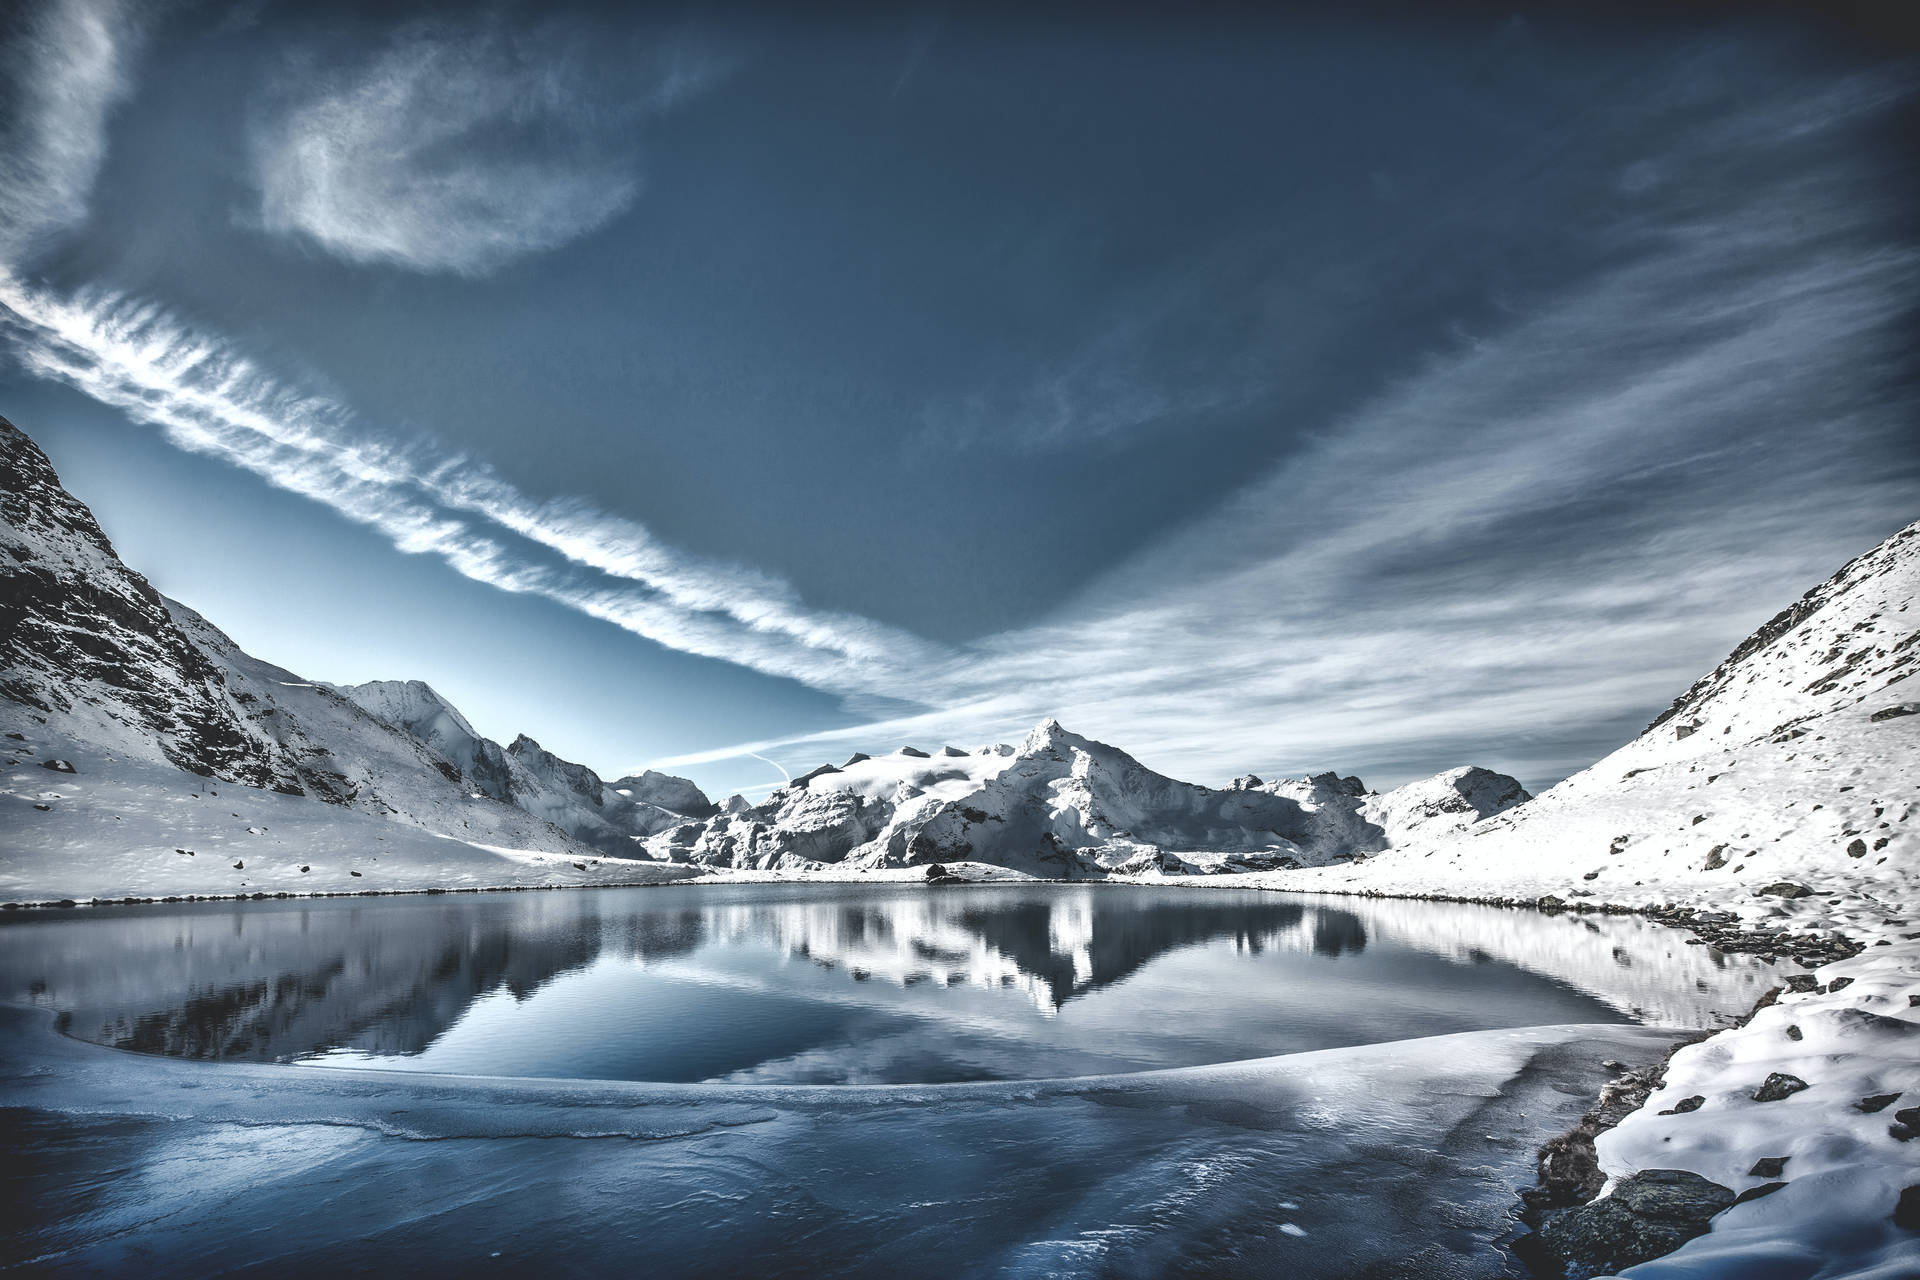 Søen reflekterer bjerg i kølig vinterscene Wallpaper